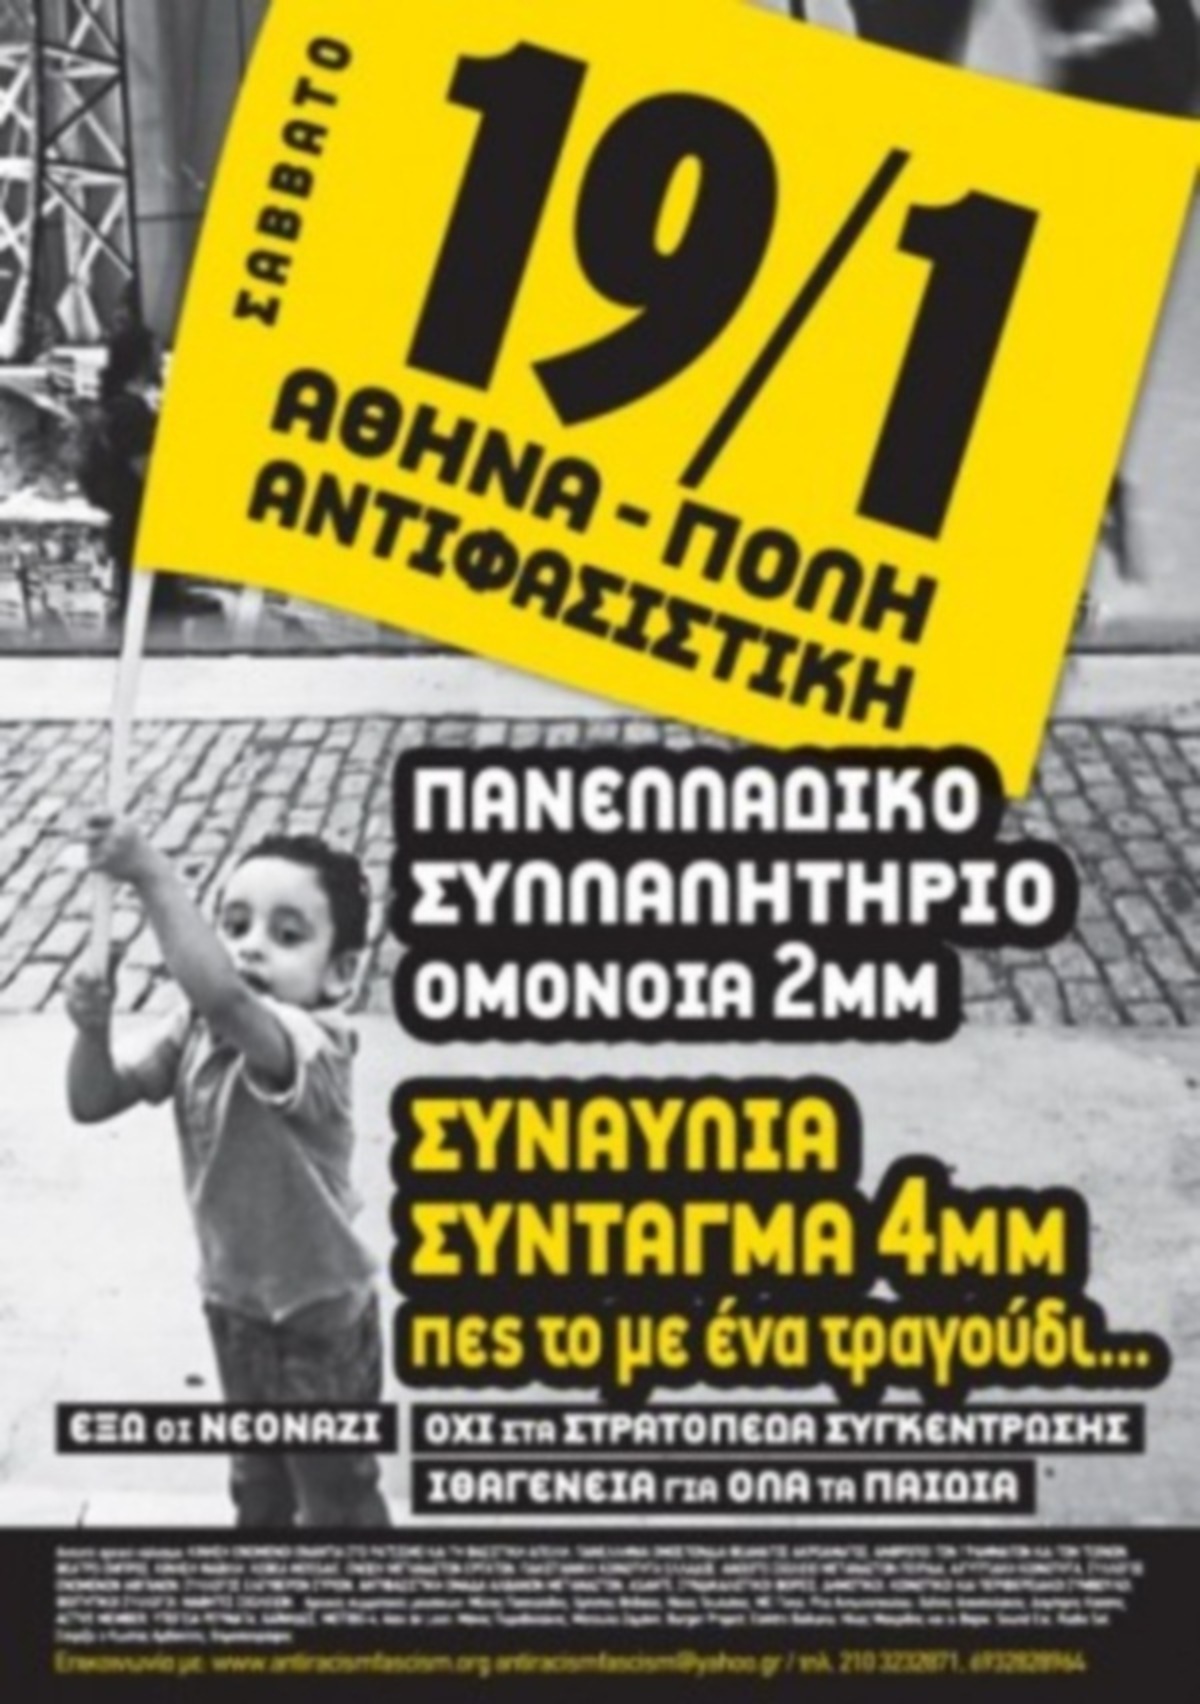 Μεγάλο αντιφασιστικό συλλαλητήριο το άλλο Σάββατο στην Αθήνα – Εκδηλώσεις αλληλεγγύης σε 13 πόλεις του κόσμου